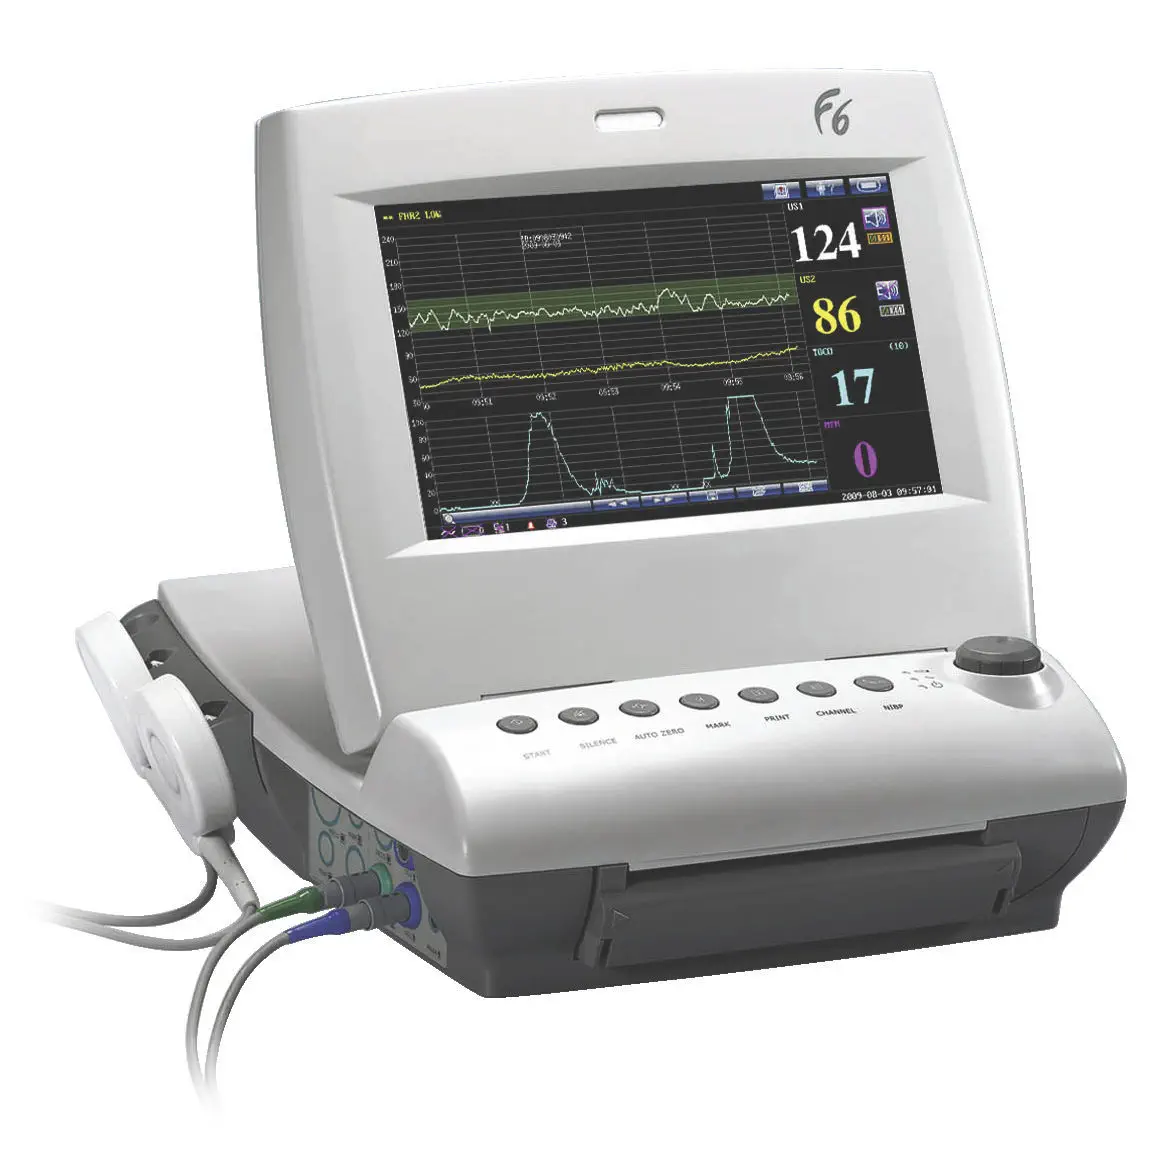 เครื่องตรวจสมรรถภาพทารกในครรภ์  FHR fetal monitor F6  Medgyn